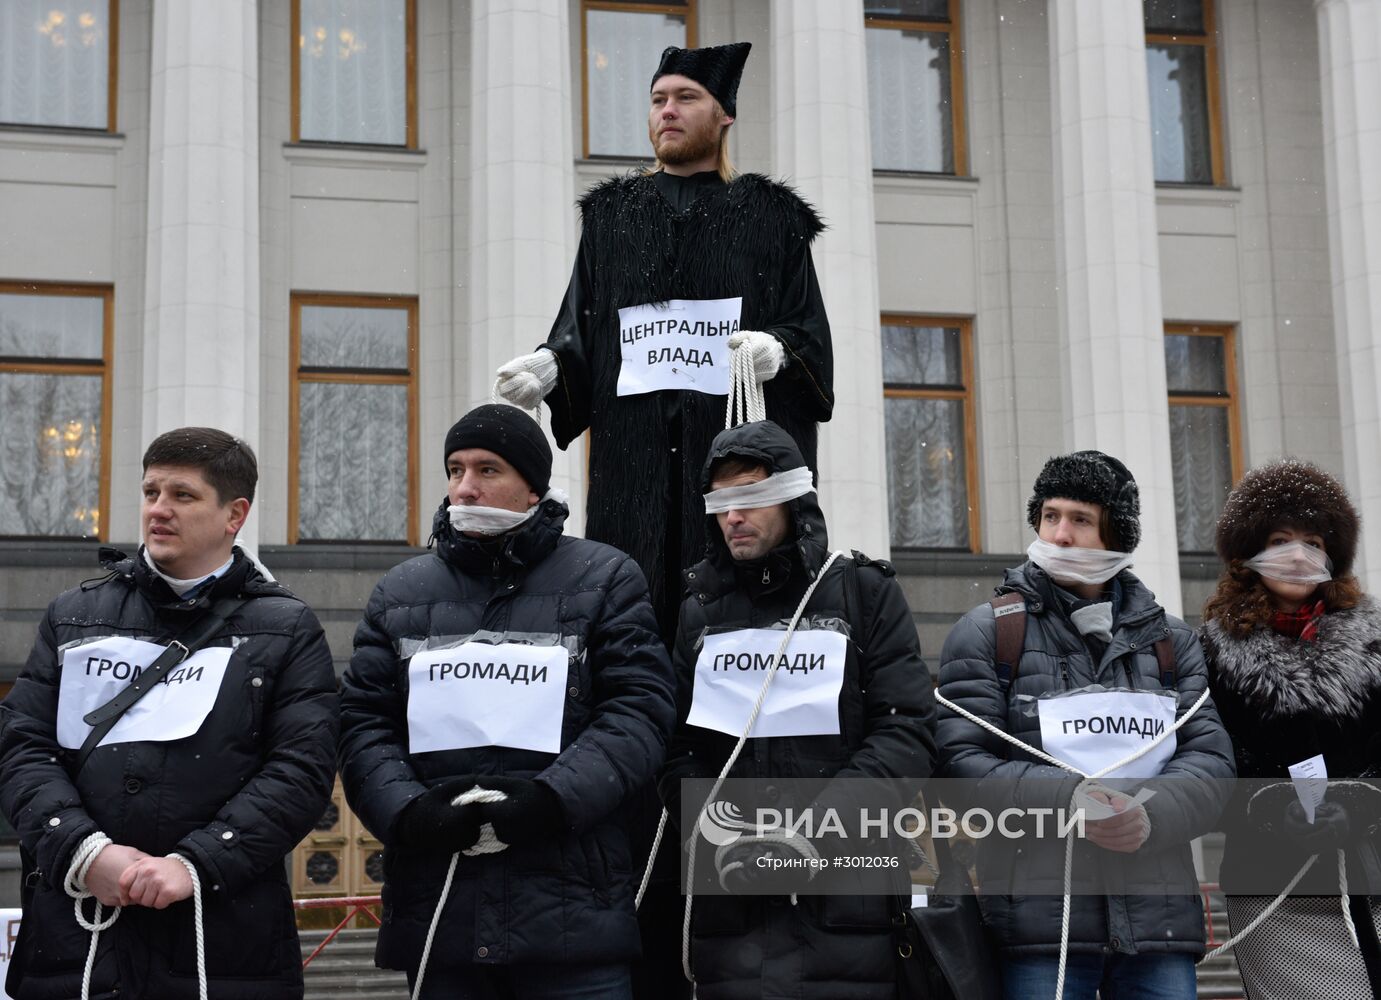 Митинг за децентрализацию власти в Киеве